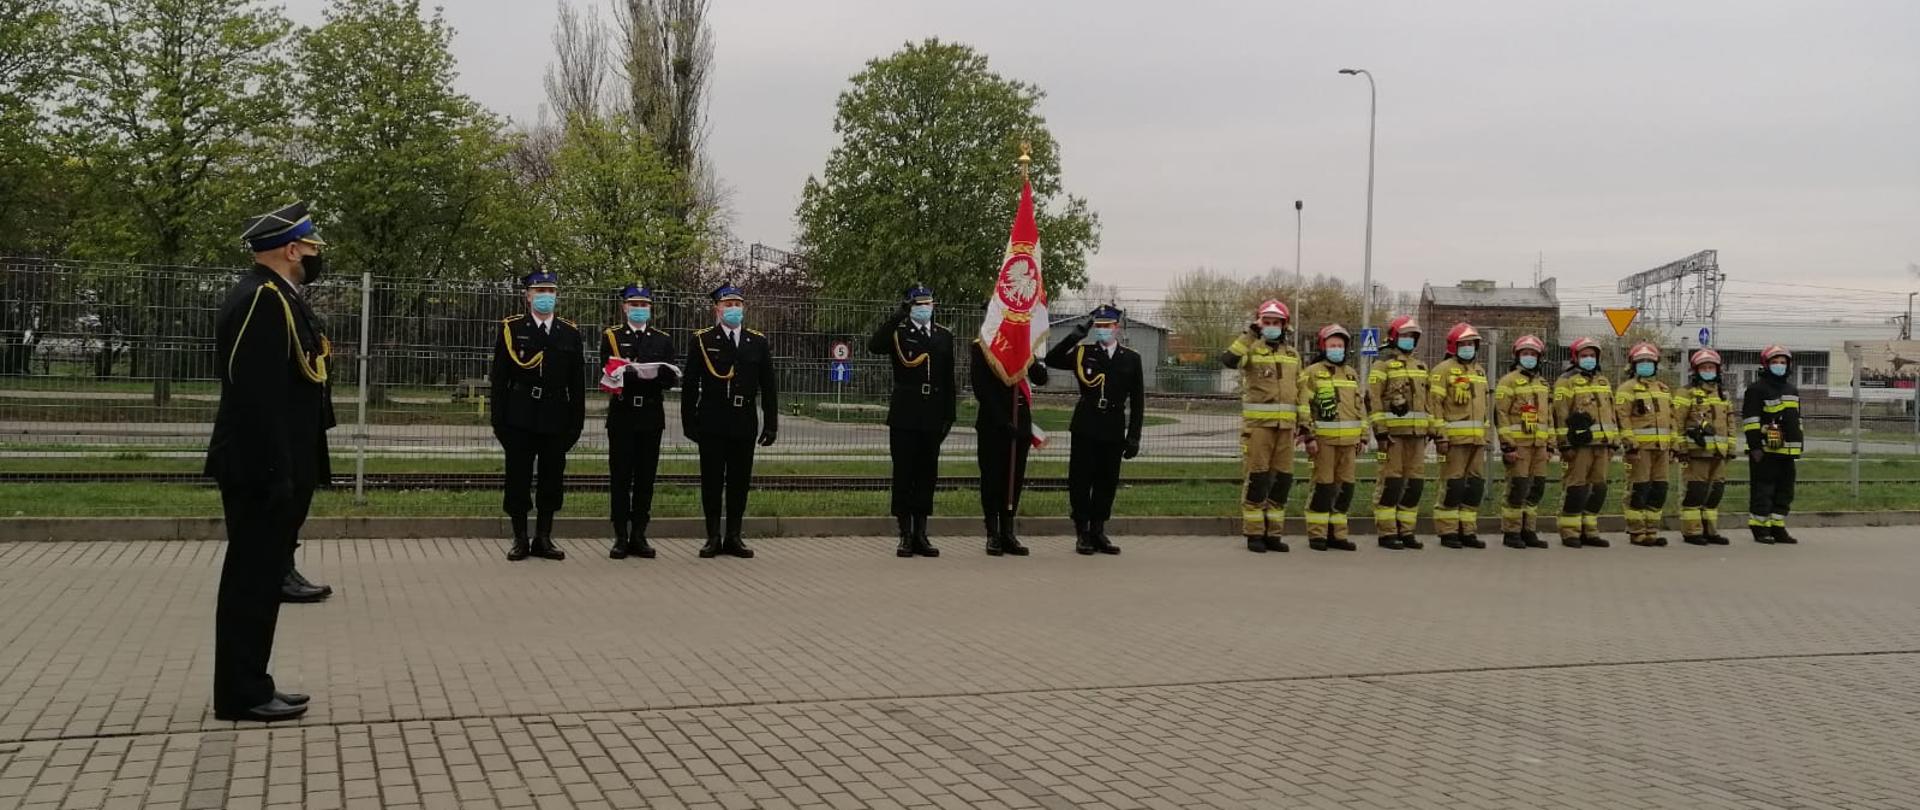 Zdjęcie przedstawia uroczyste podniesienie flagi państwowej w Komendzie Powiatowej Państwowej Straży Pożarnej w Pruszkowie z okazji dnia Flagi. Na zdjęciu widoczny jest dowódca uroczystości, poczet flagowy i sztandarowy oraz zmiana służbowa JRG. 